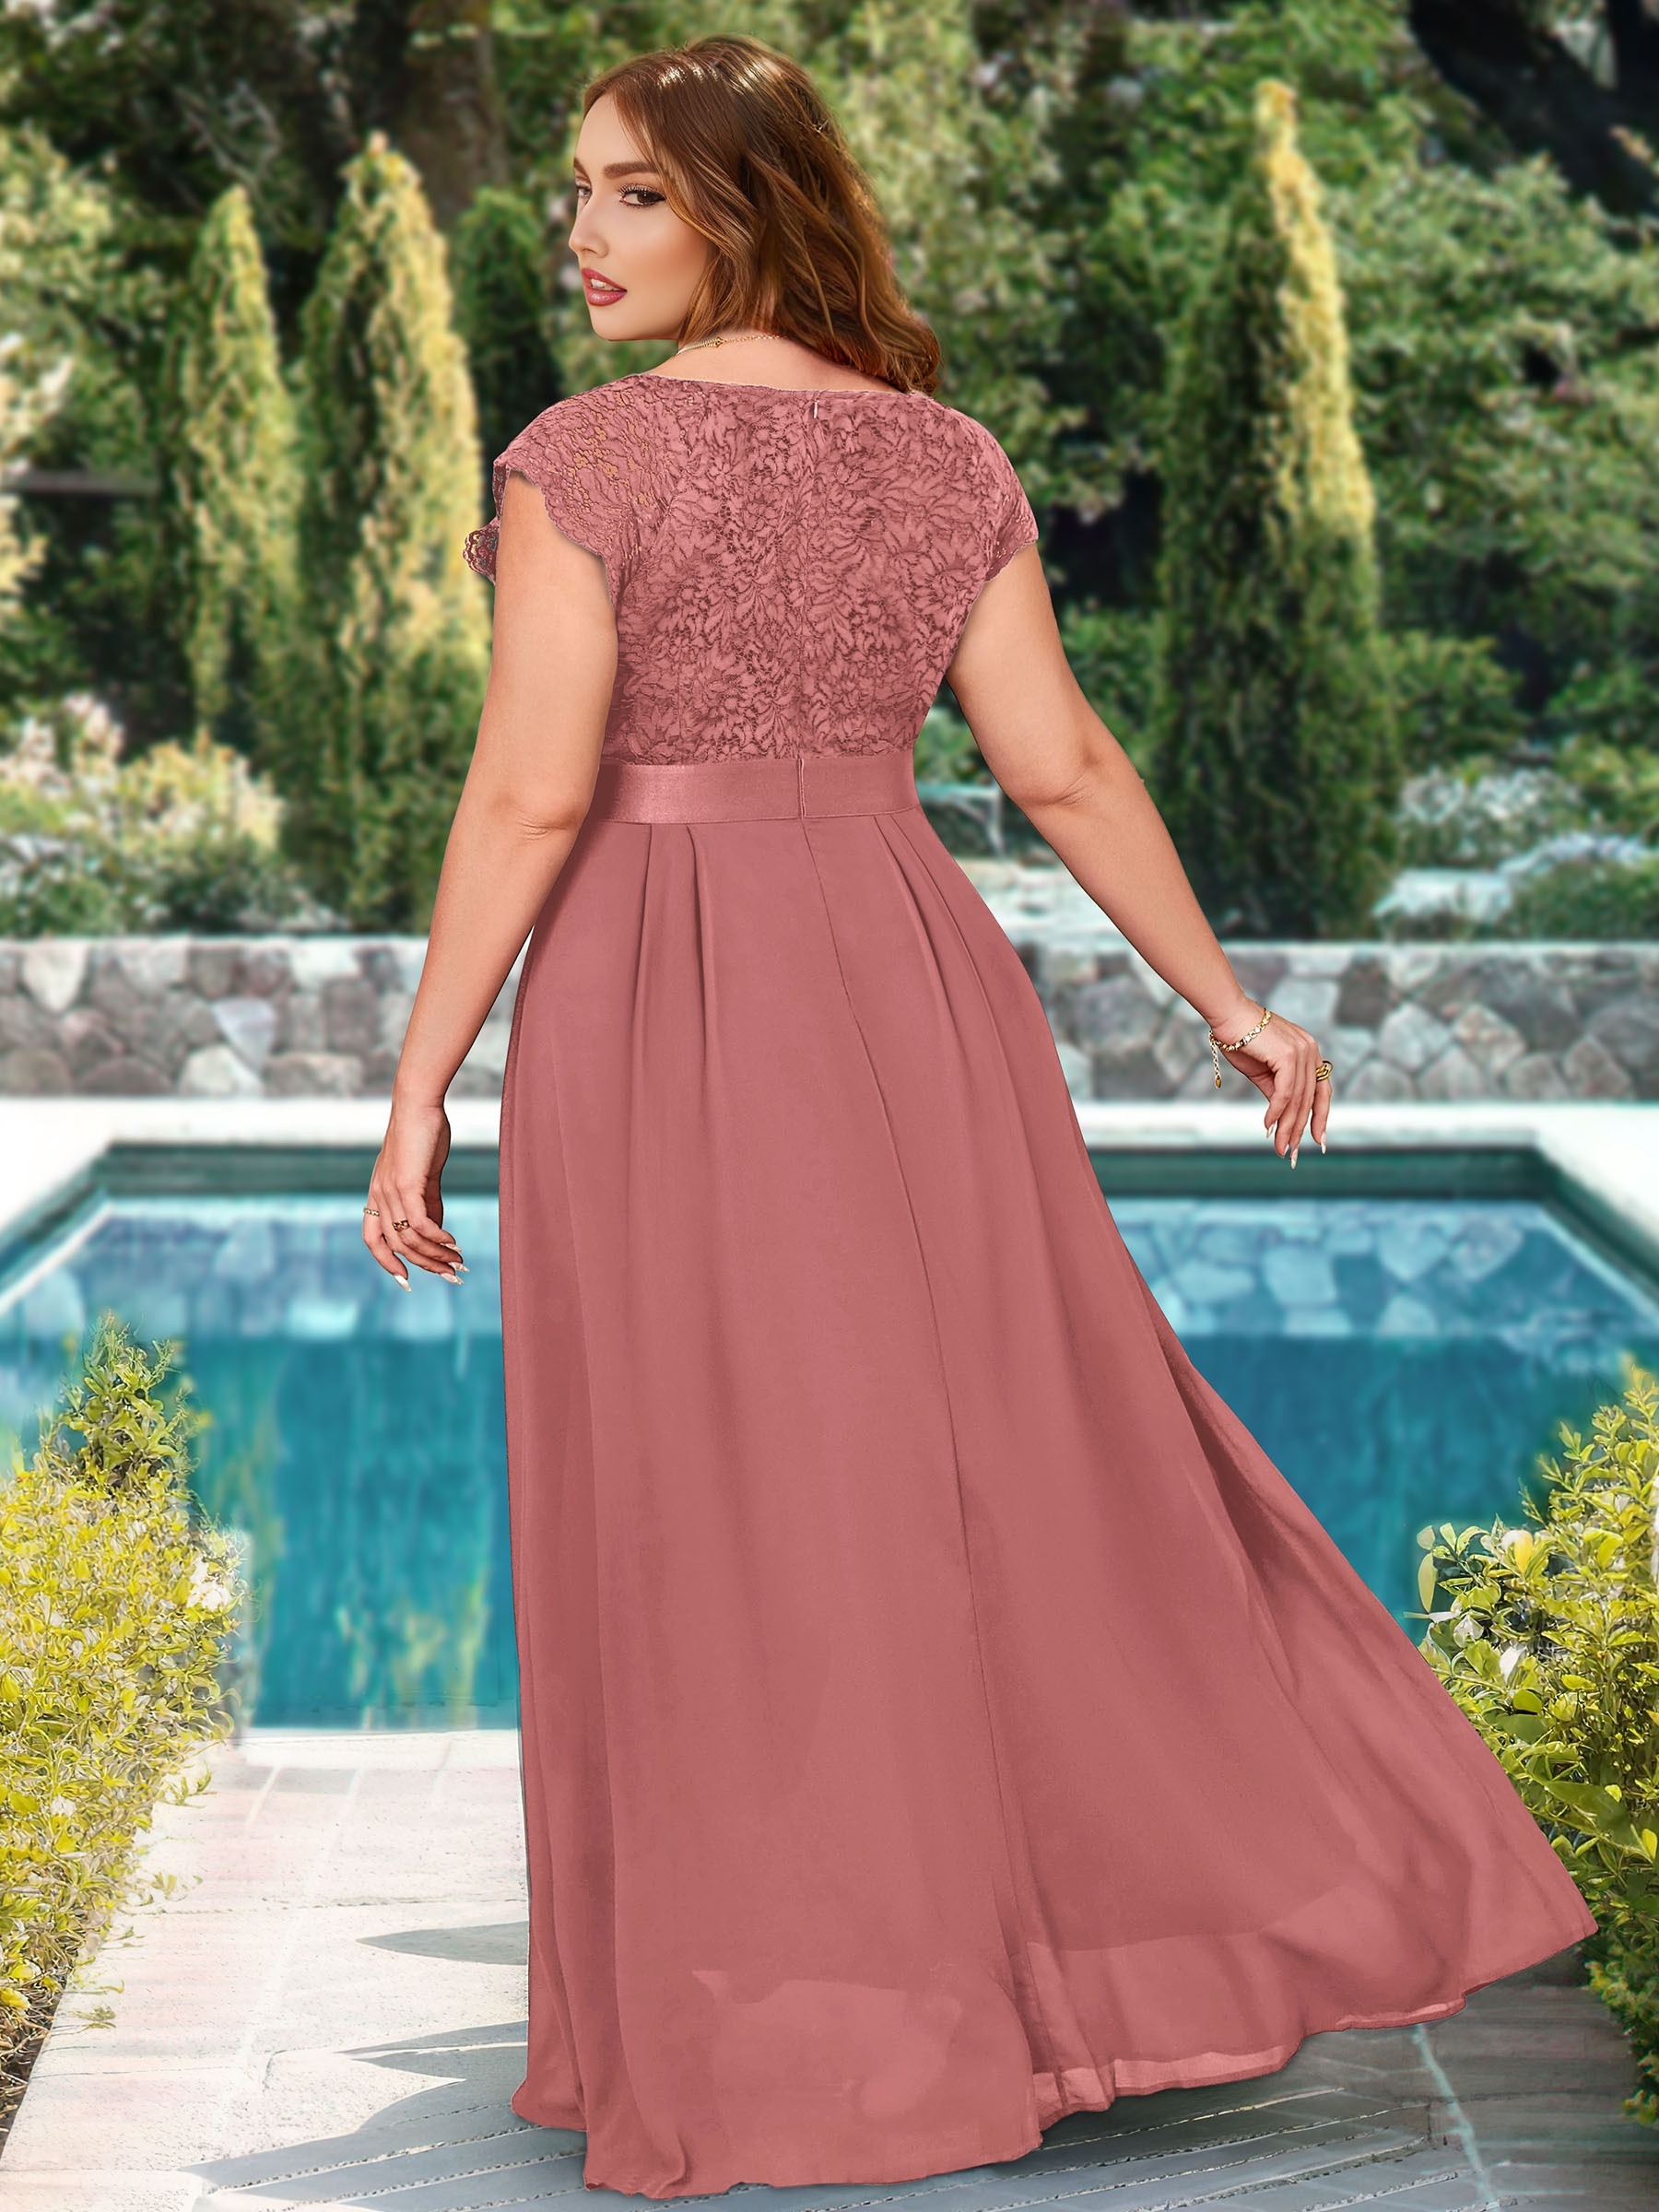 Buy Quealent Women's Elegant Print O-Neck Mini Party Dress Plus Size Online  at desertcartMaldives